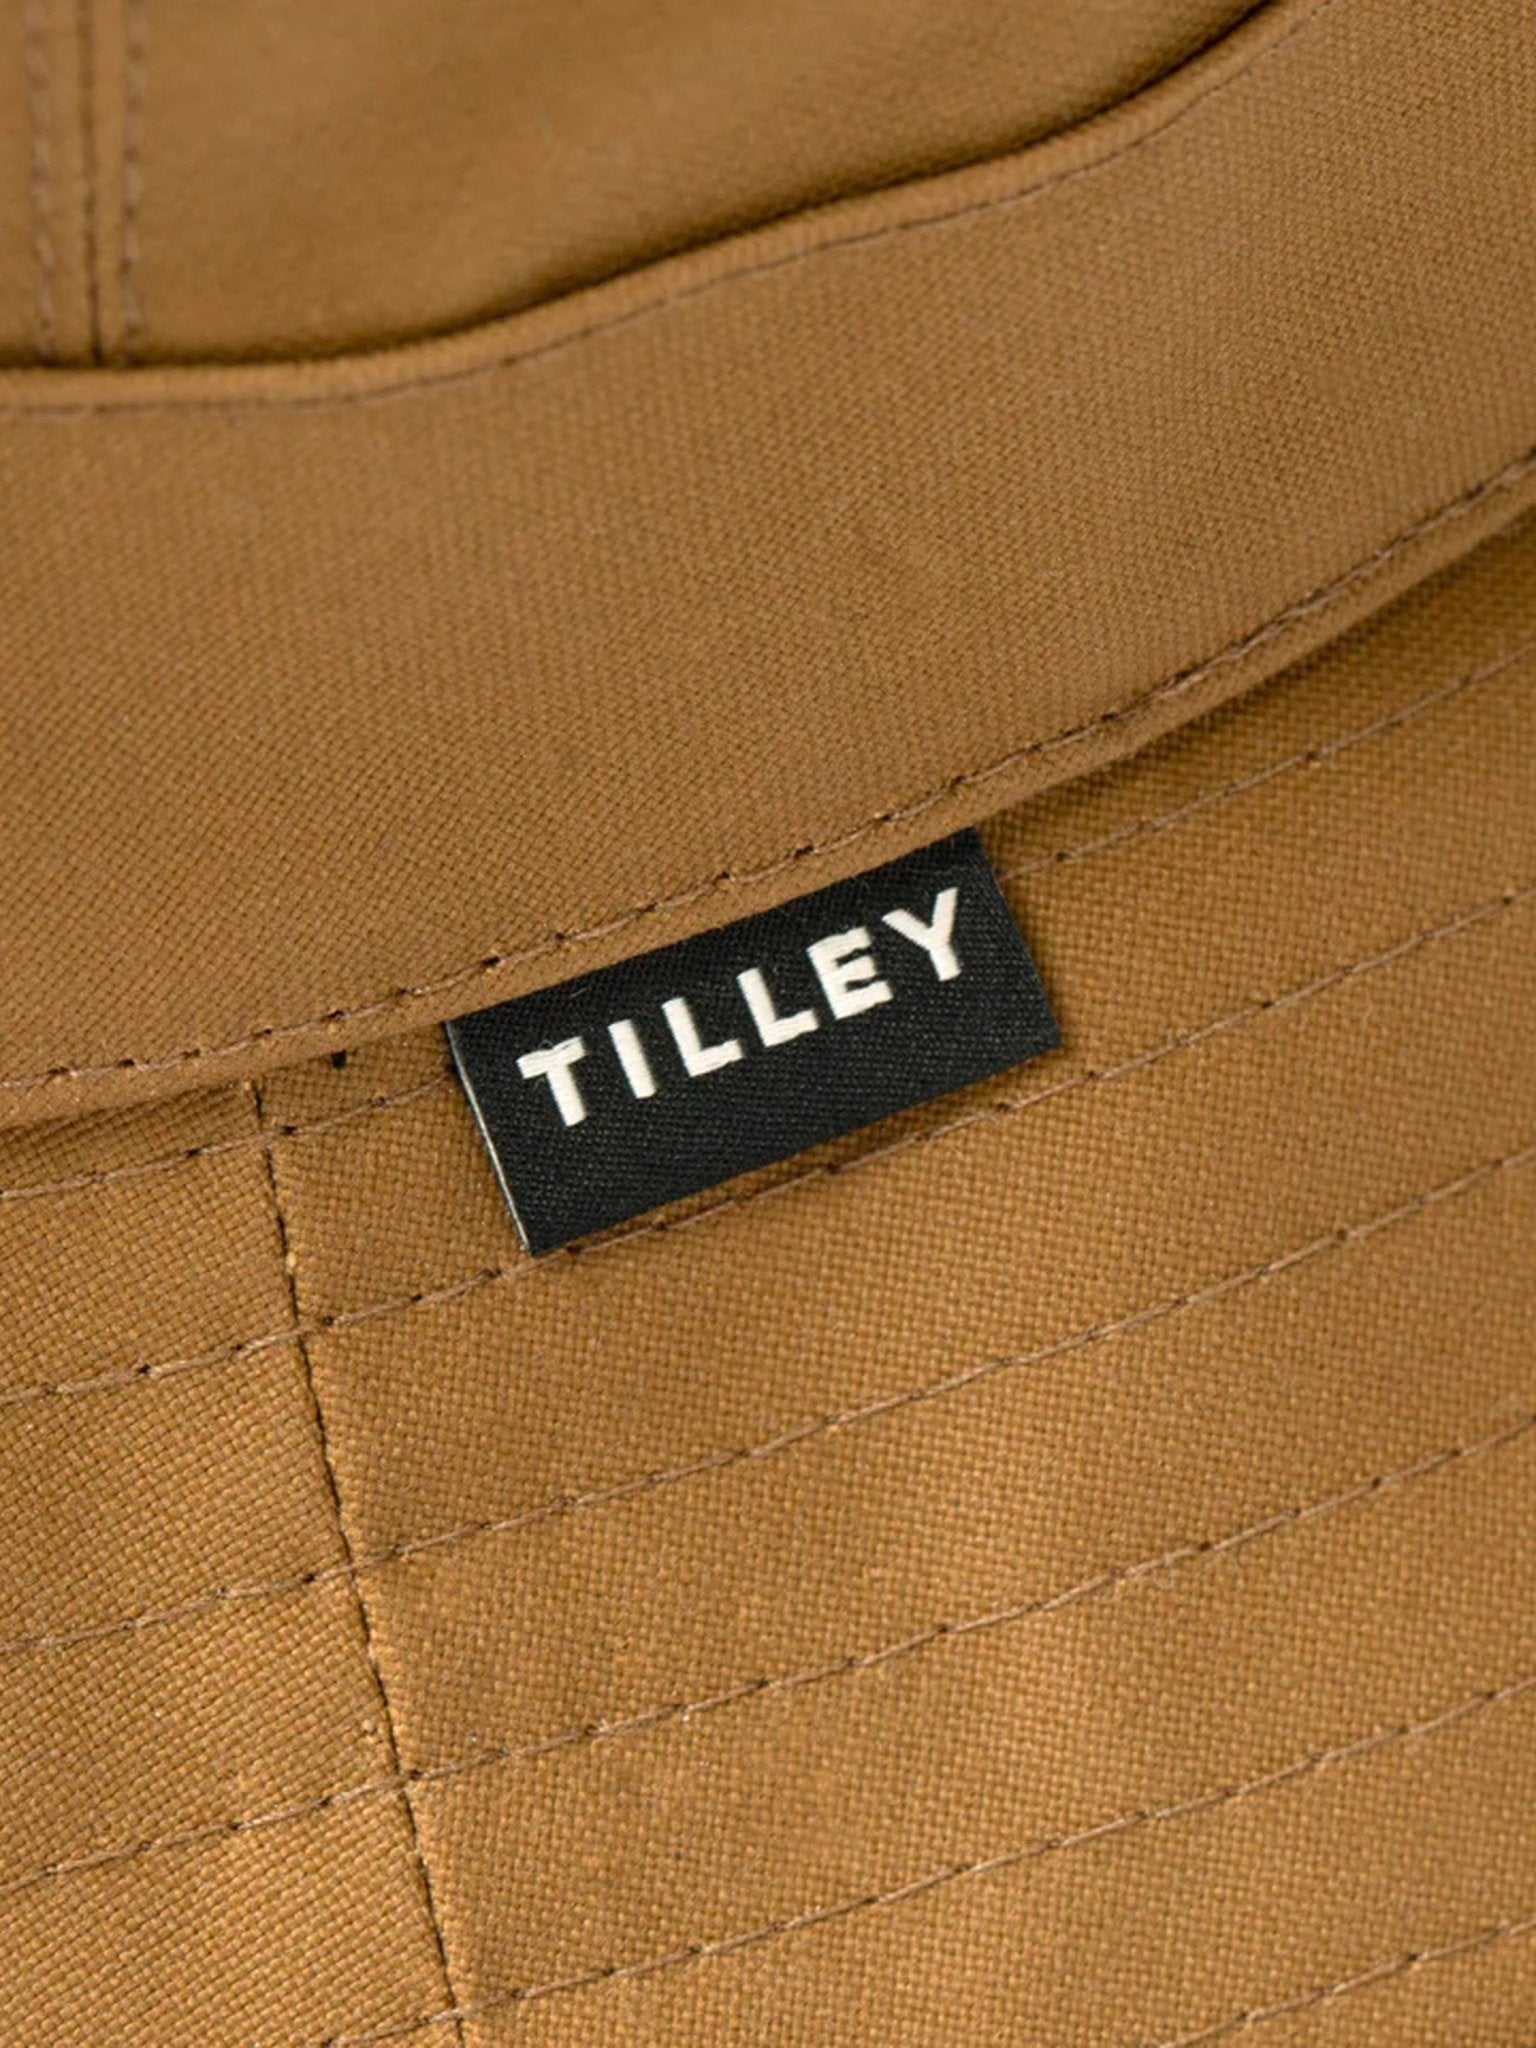 4elementsclothingTilleyTilley - Waxed Cotton Bucket Hat / Tilley Sun hatHats826486582881